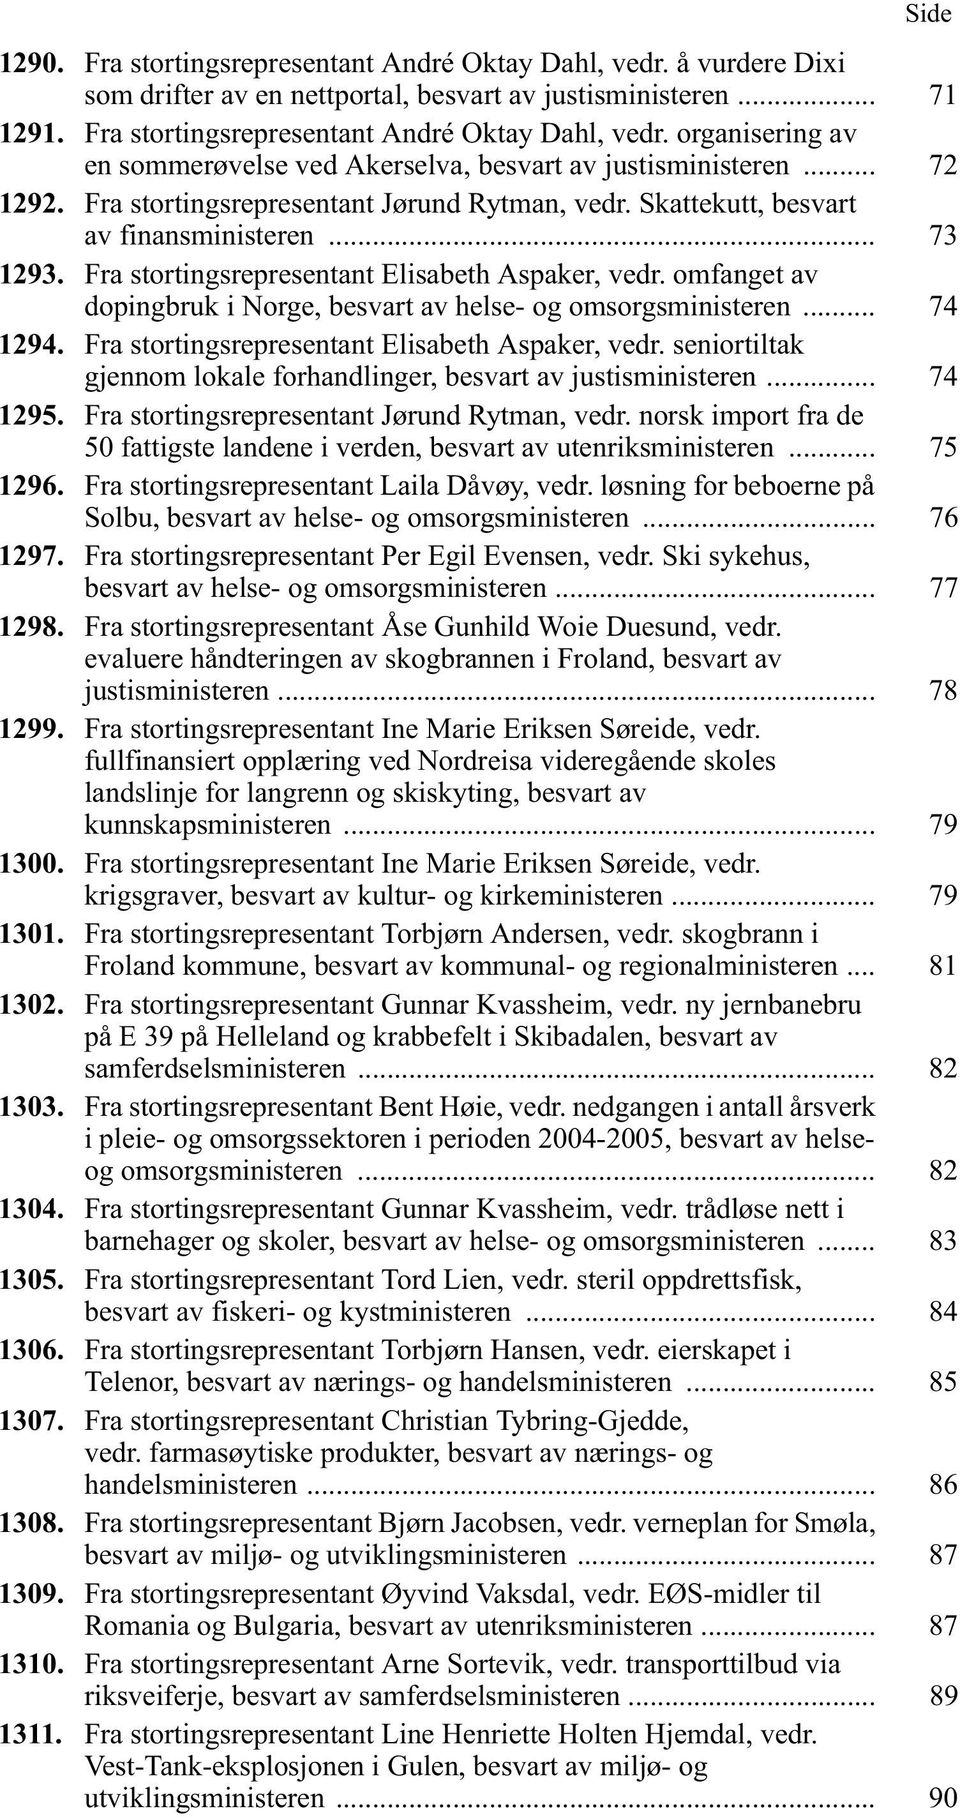 omfanget av dopingbruk i Norge, besvart av helse- og omsorgsministeren... 74 1294. Fra stortingsrepresentant Elisabeth Aspaker, vedr.